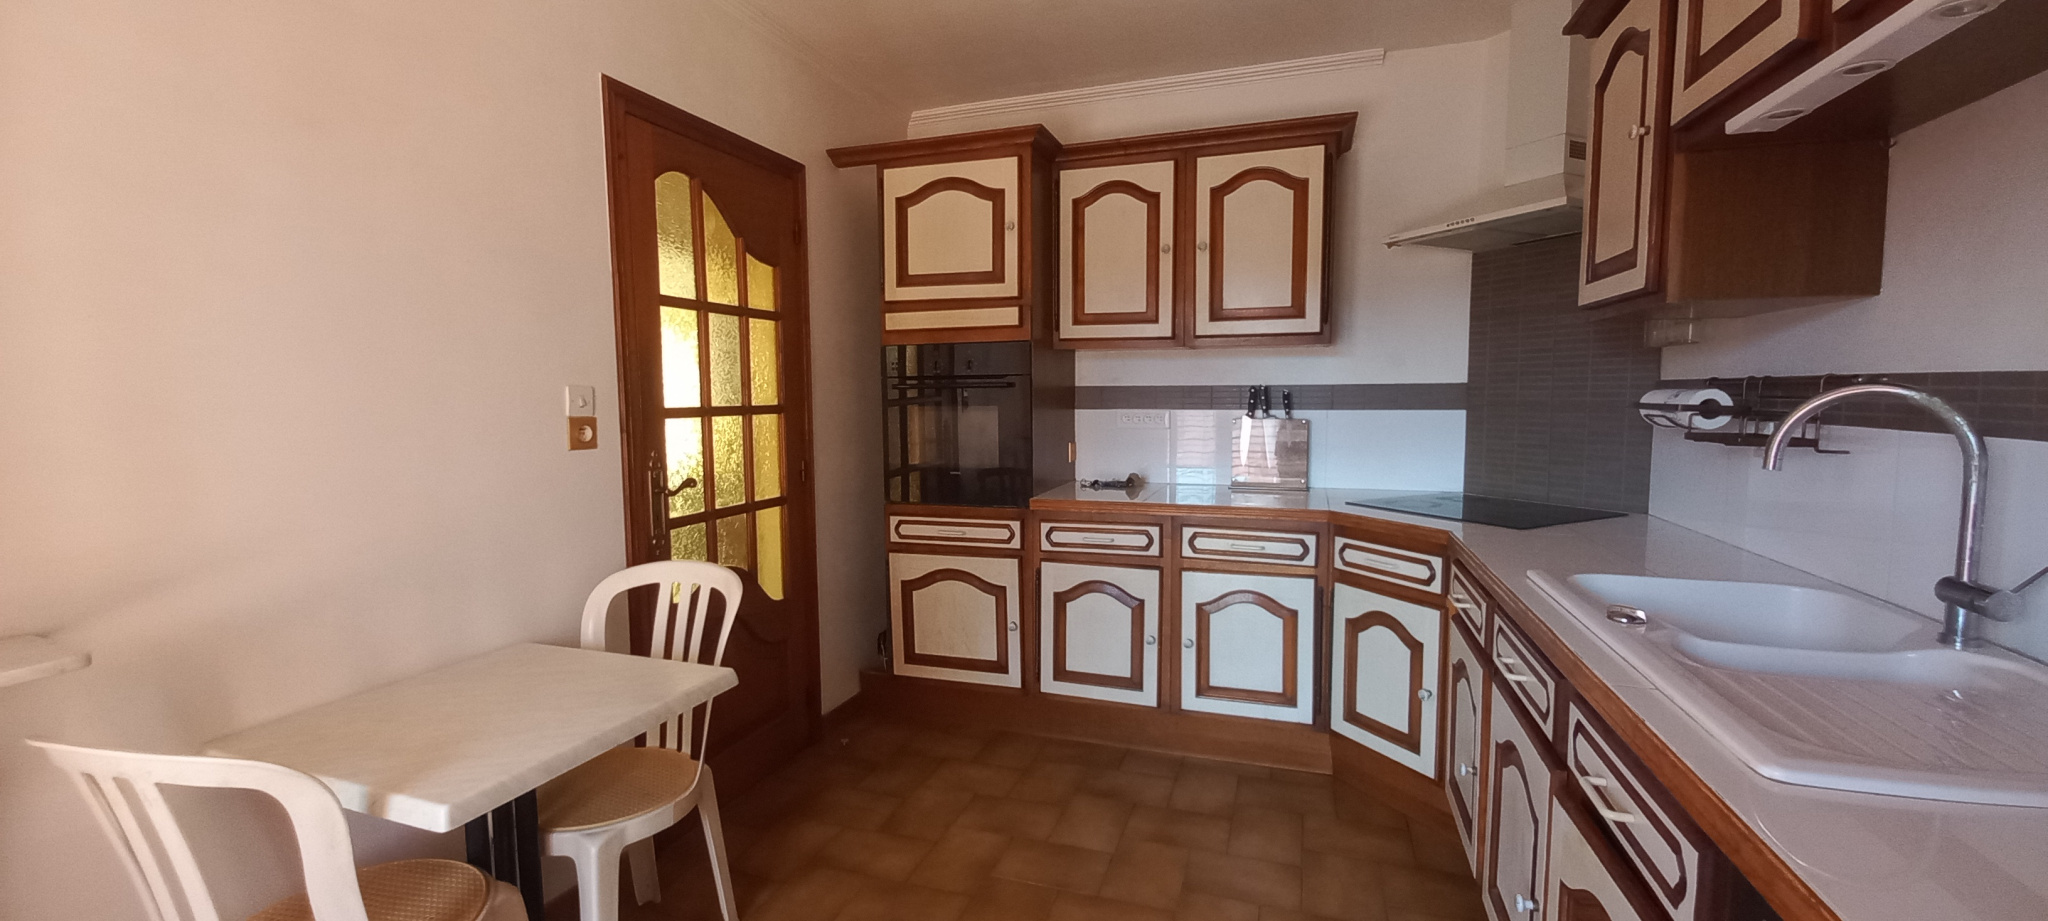 À vendre maison/villa de 121m2 à argelès-sur-mer (66700) - Photo 8'